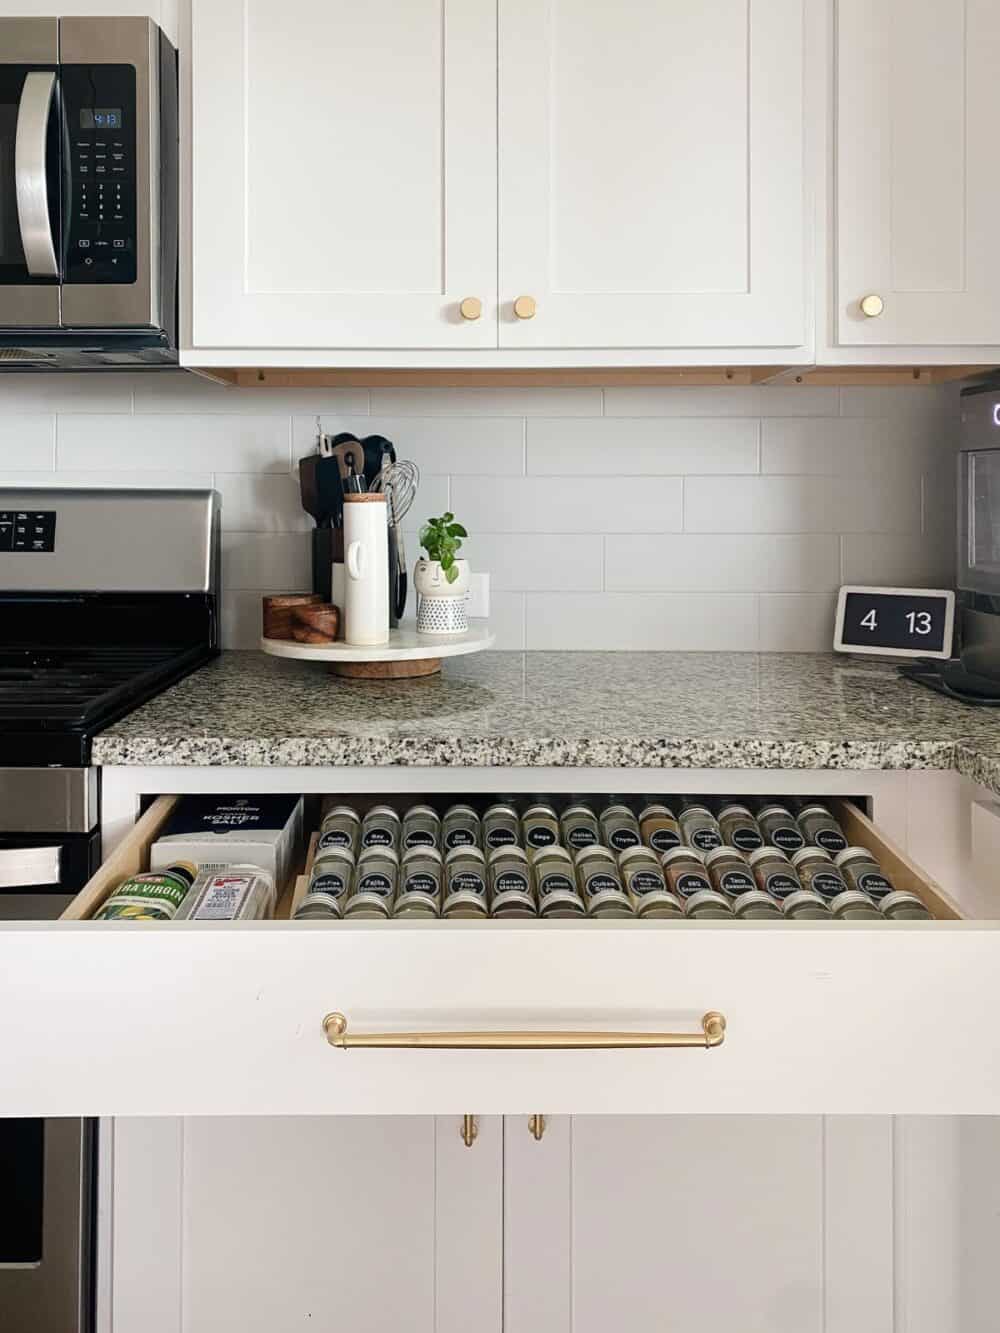 Organized spice drawer in a white kitchen